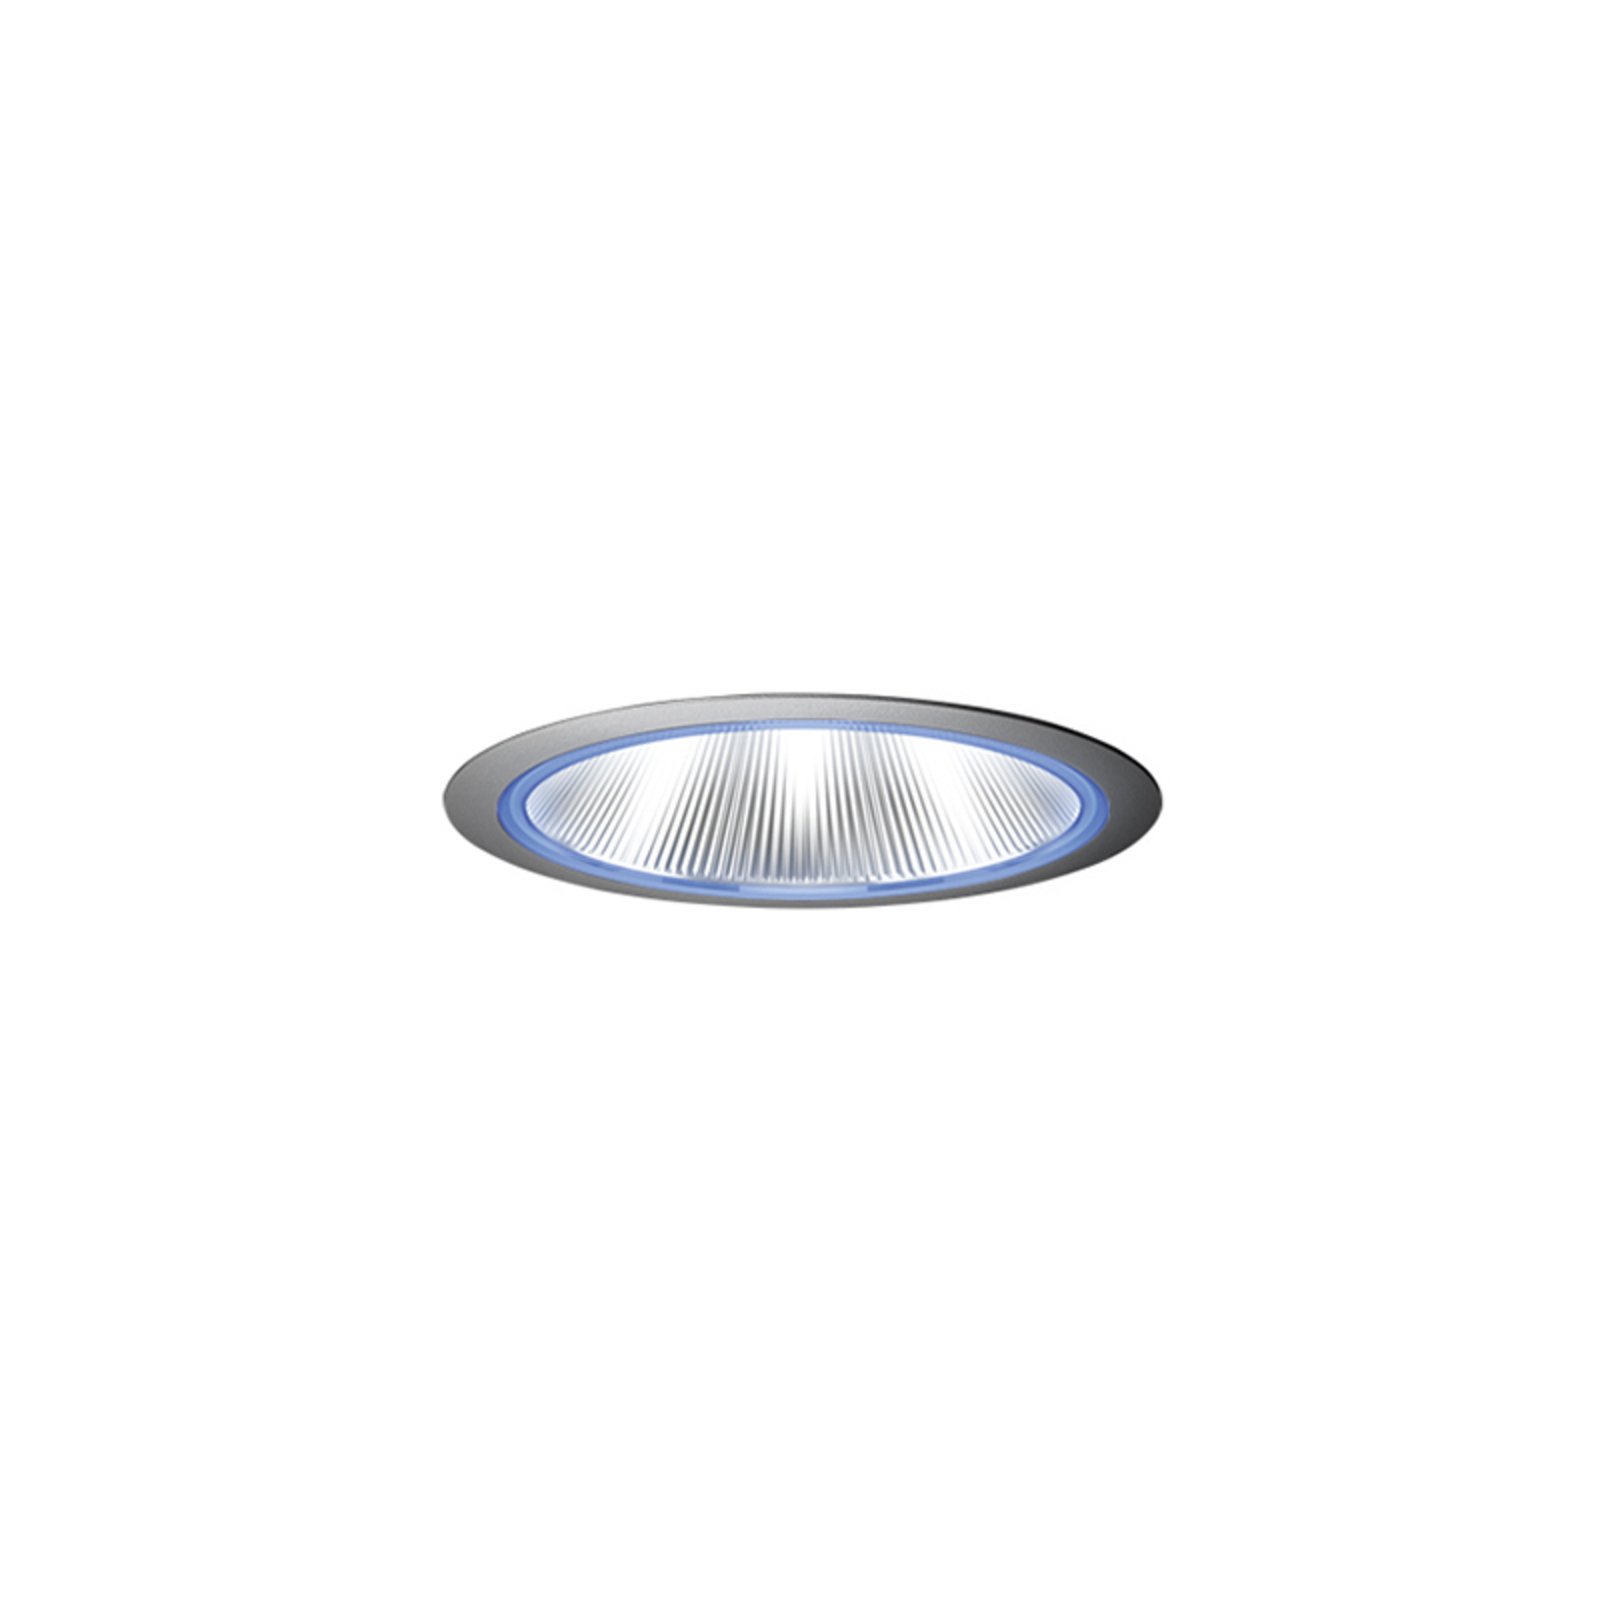 Lichteffect ring Flirz Ø6,1cm blauw voor Fuzzy Flixx